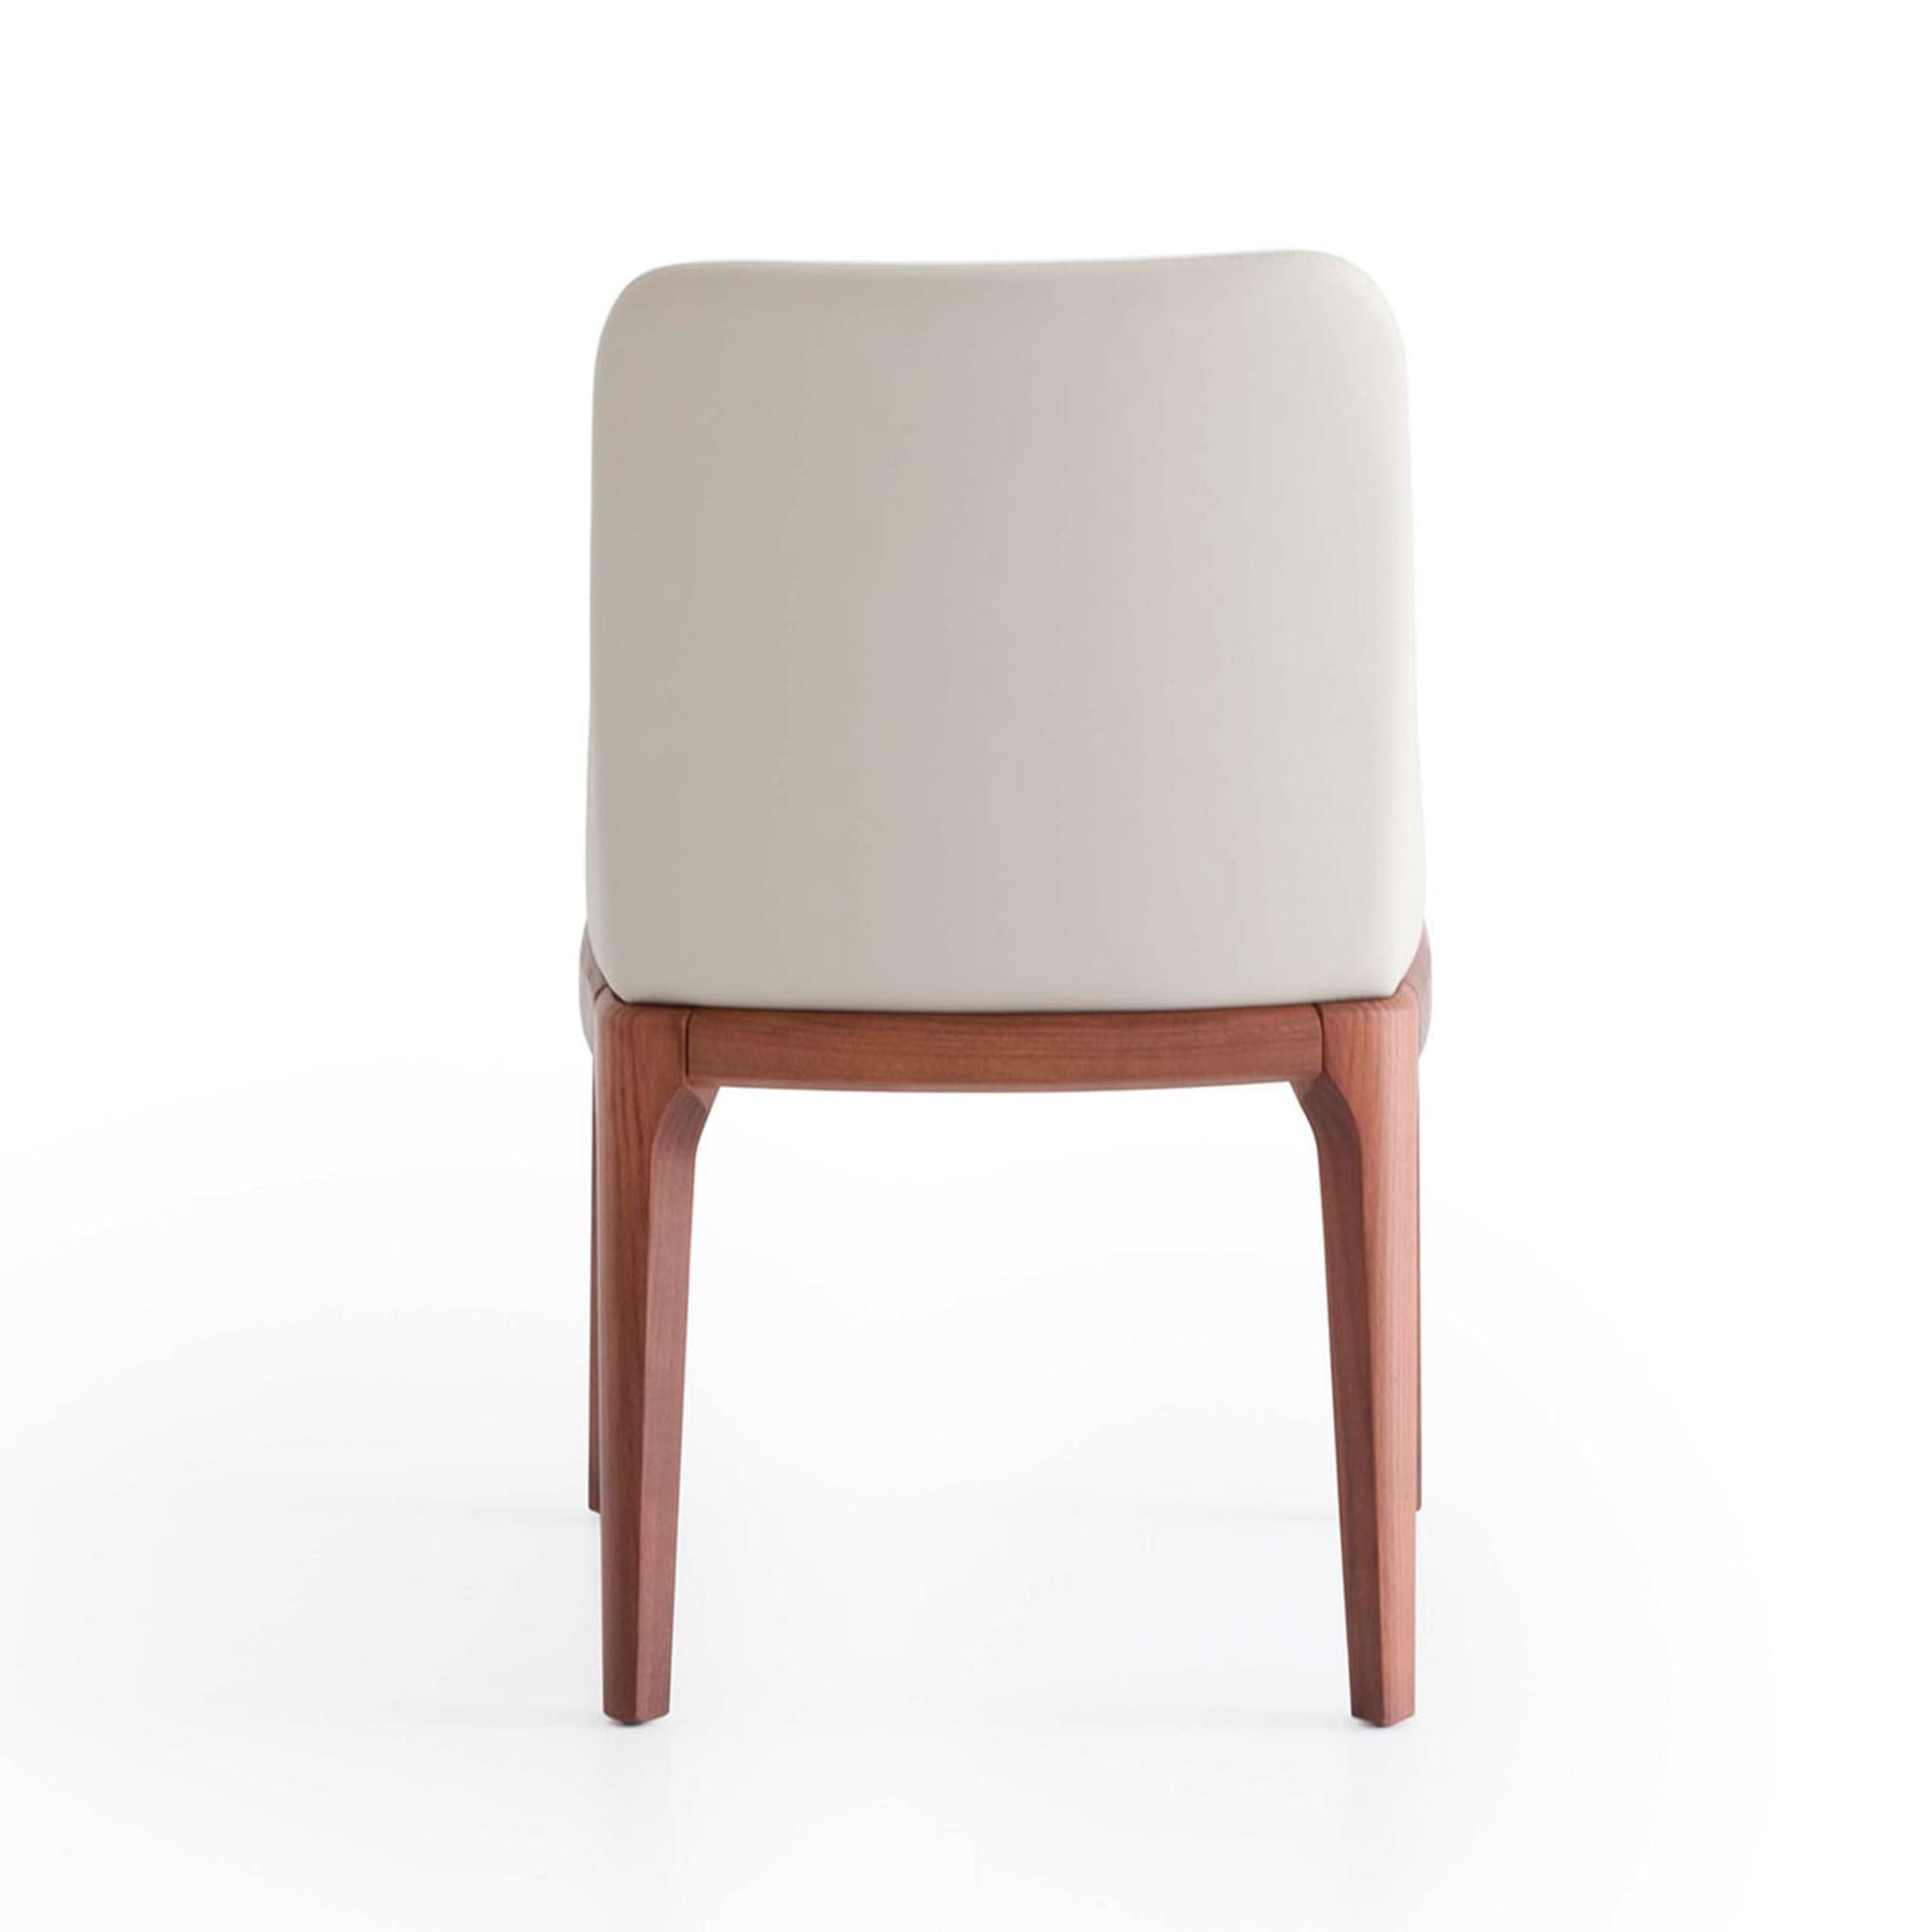 Antigona White Leather Chair - Alternative view 1